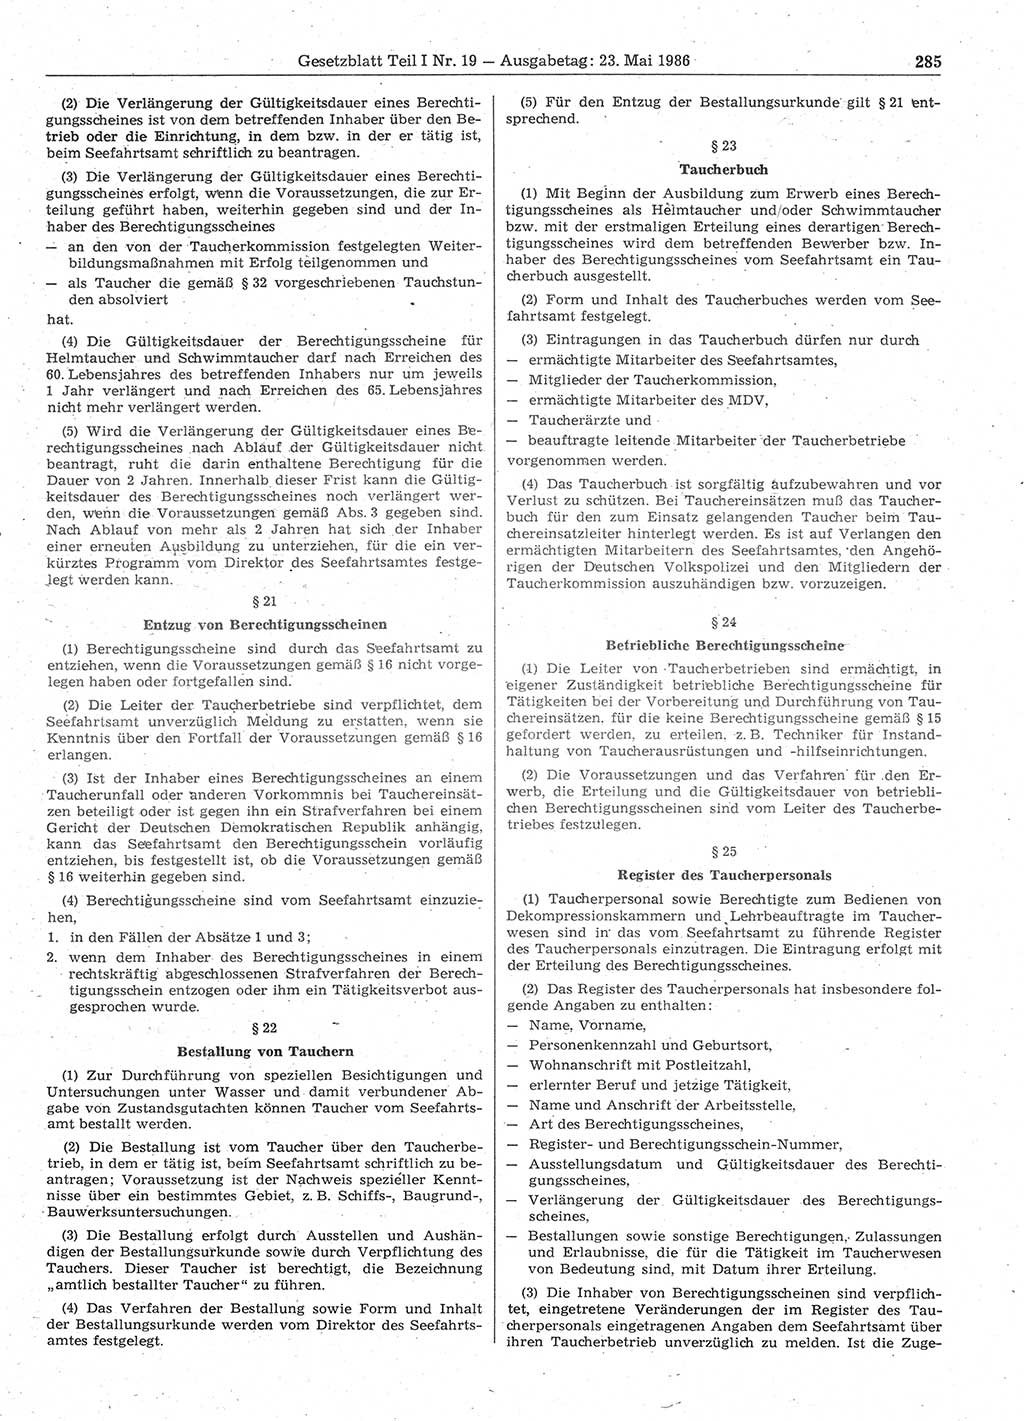 Gesetzblatt (GBl.) der Deutschen Demokratischen Republik (DDR) Teil Ⅰ 1986, Seite 285 (GBl. DDR Ⅰ 1986, S. 285)